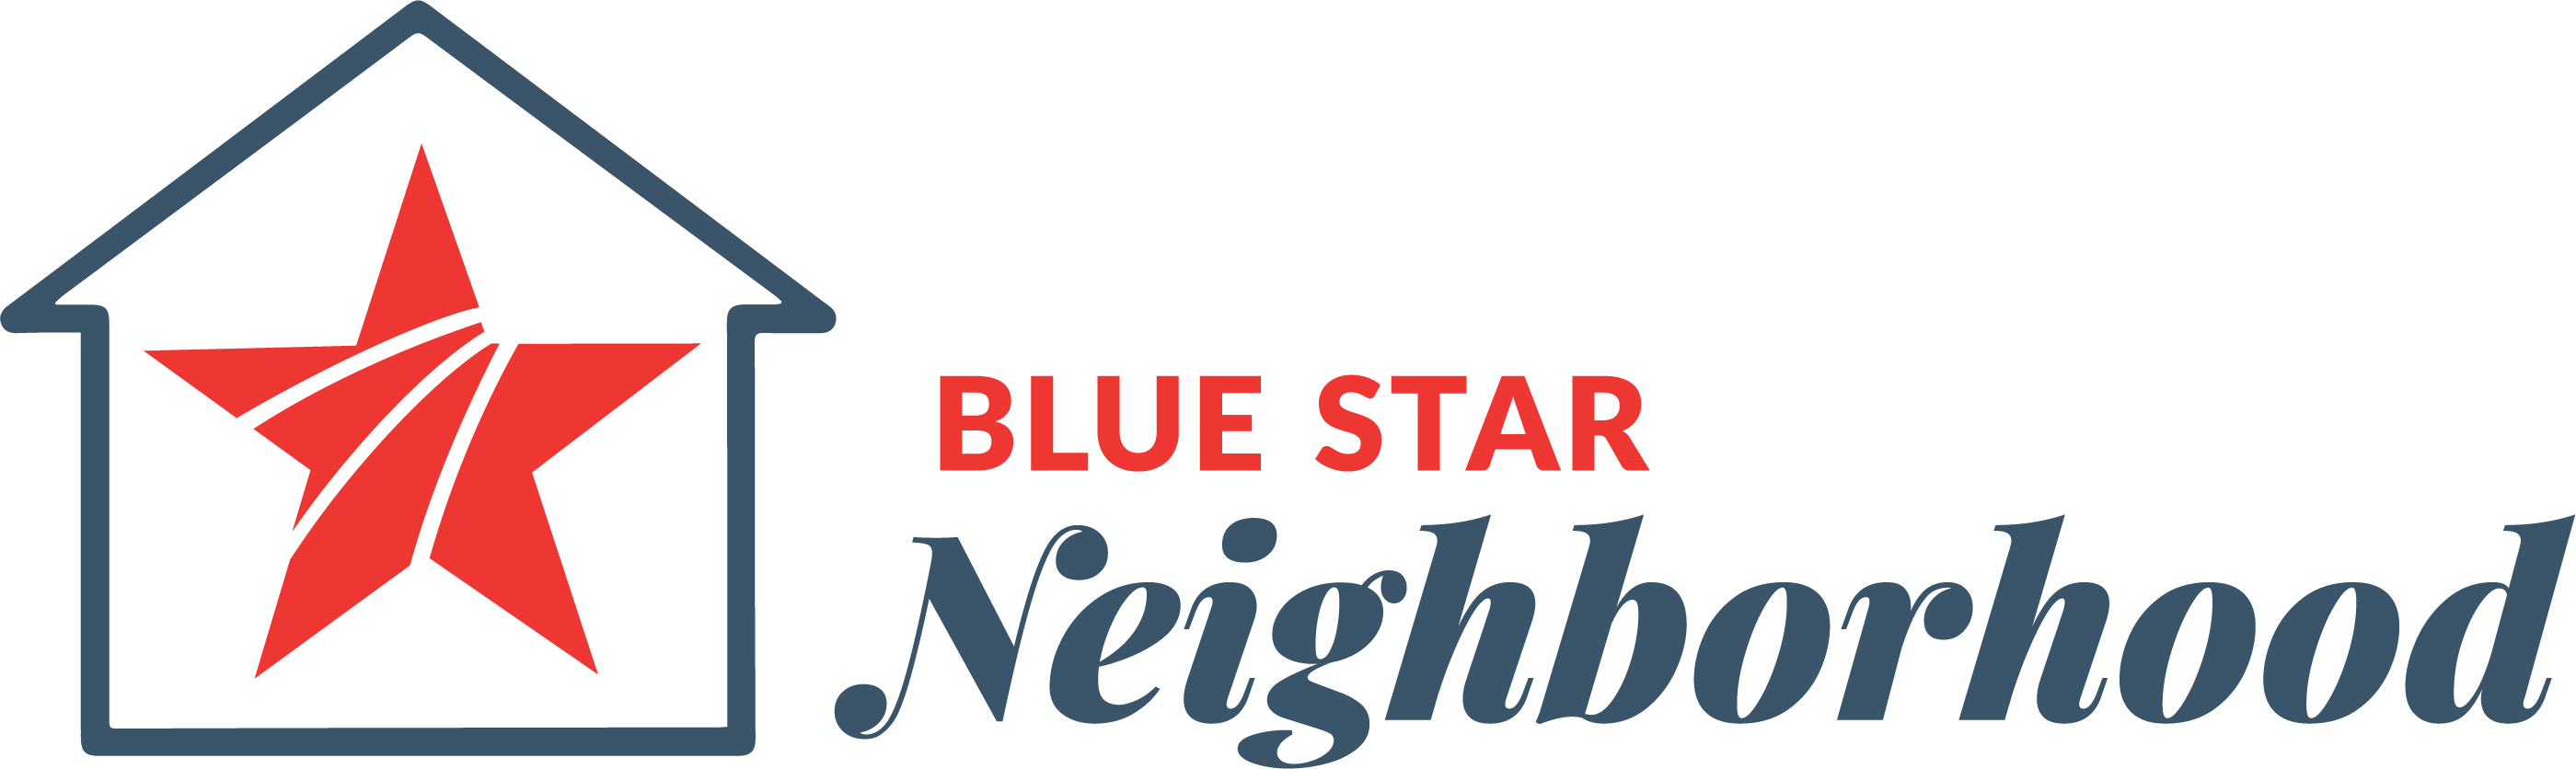 BSF_Neighborhood_Logo_02